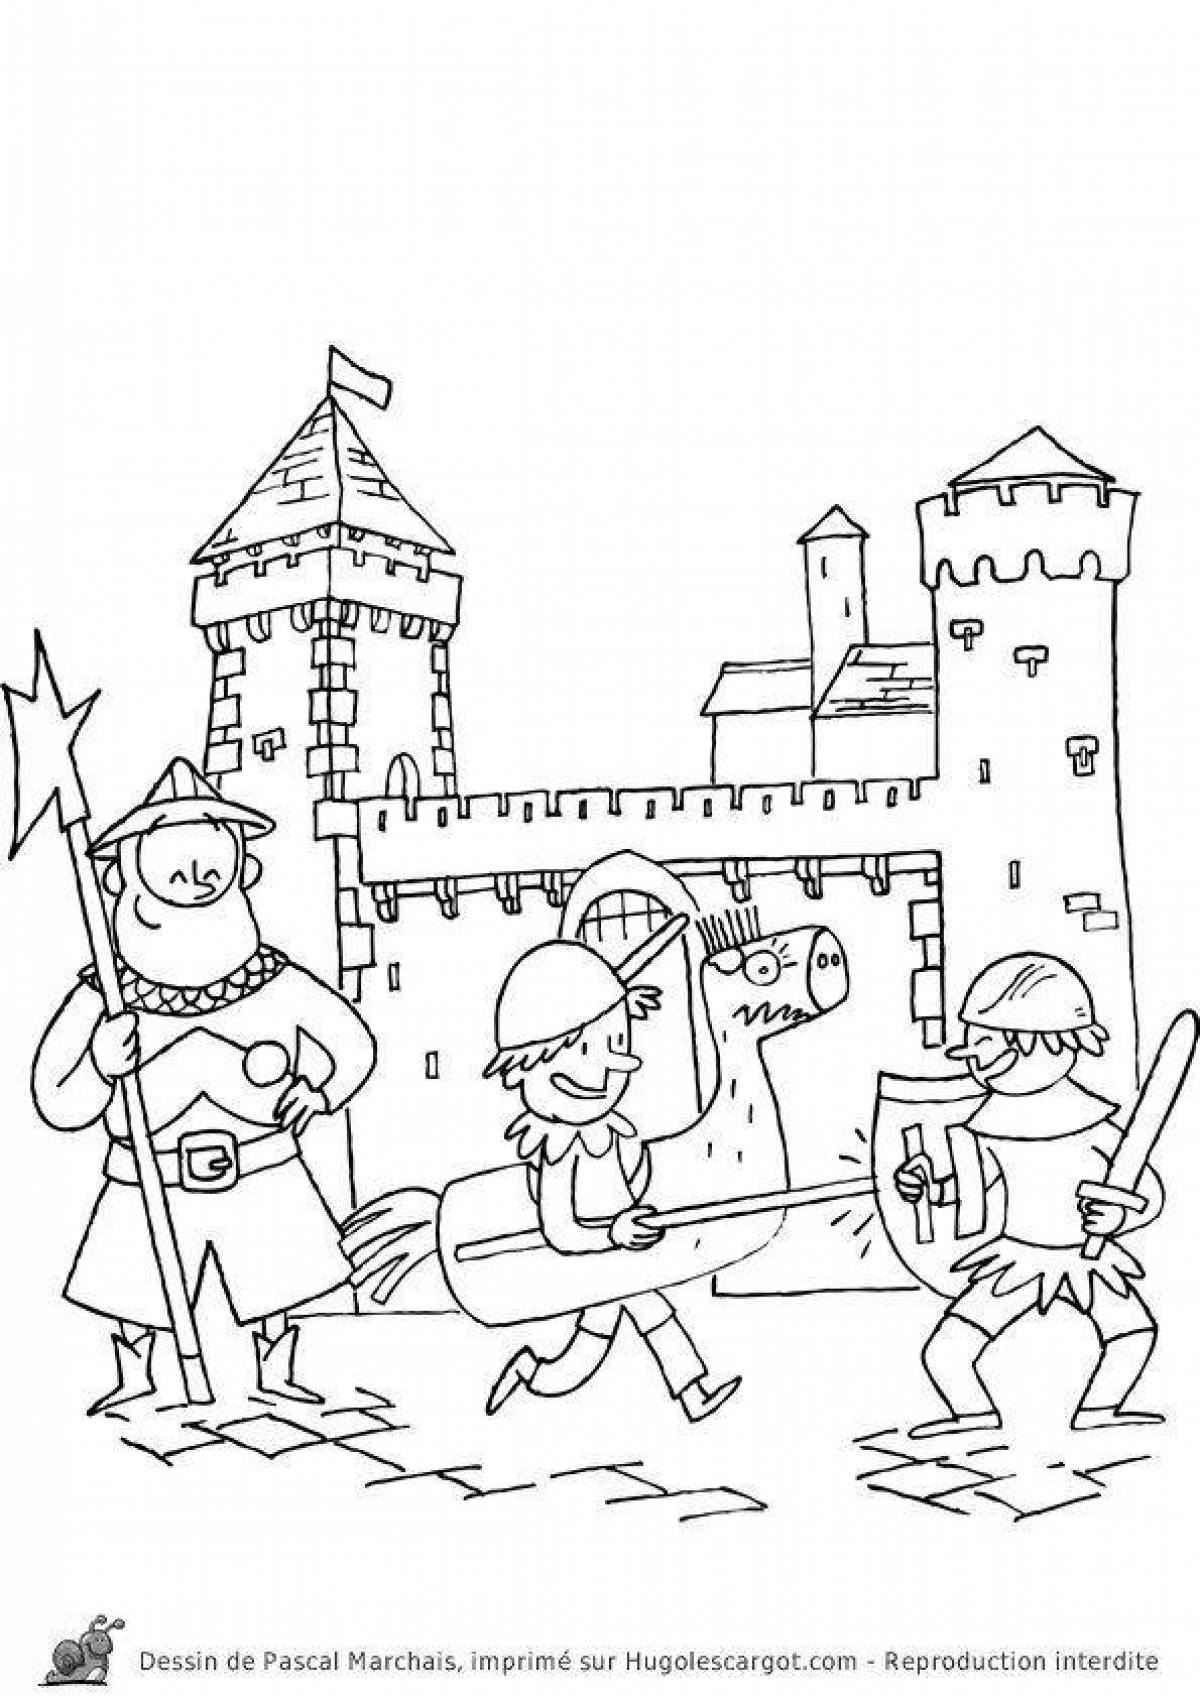 Coloring book grandiose knight's castle